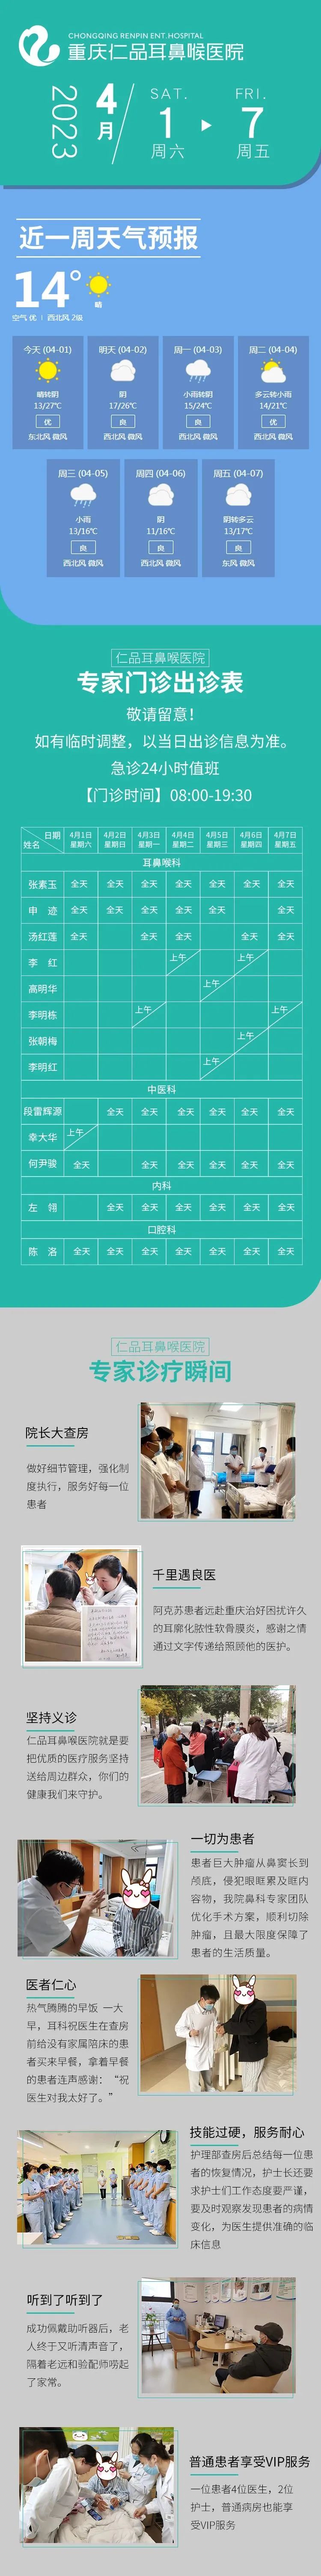 重庆专家门诊排班表